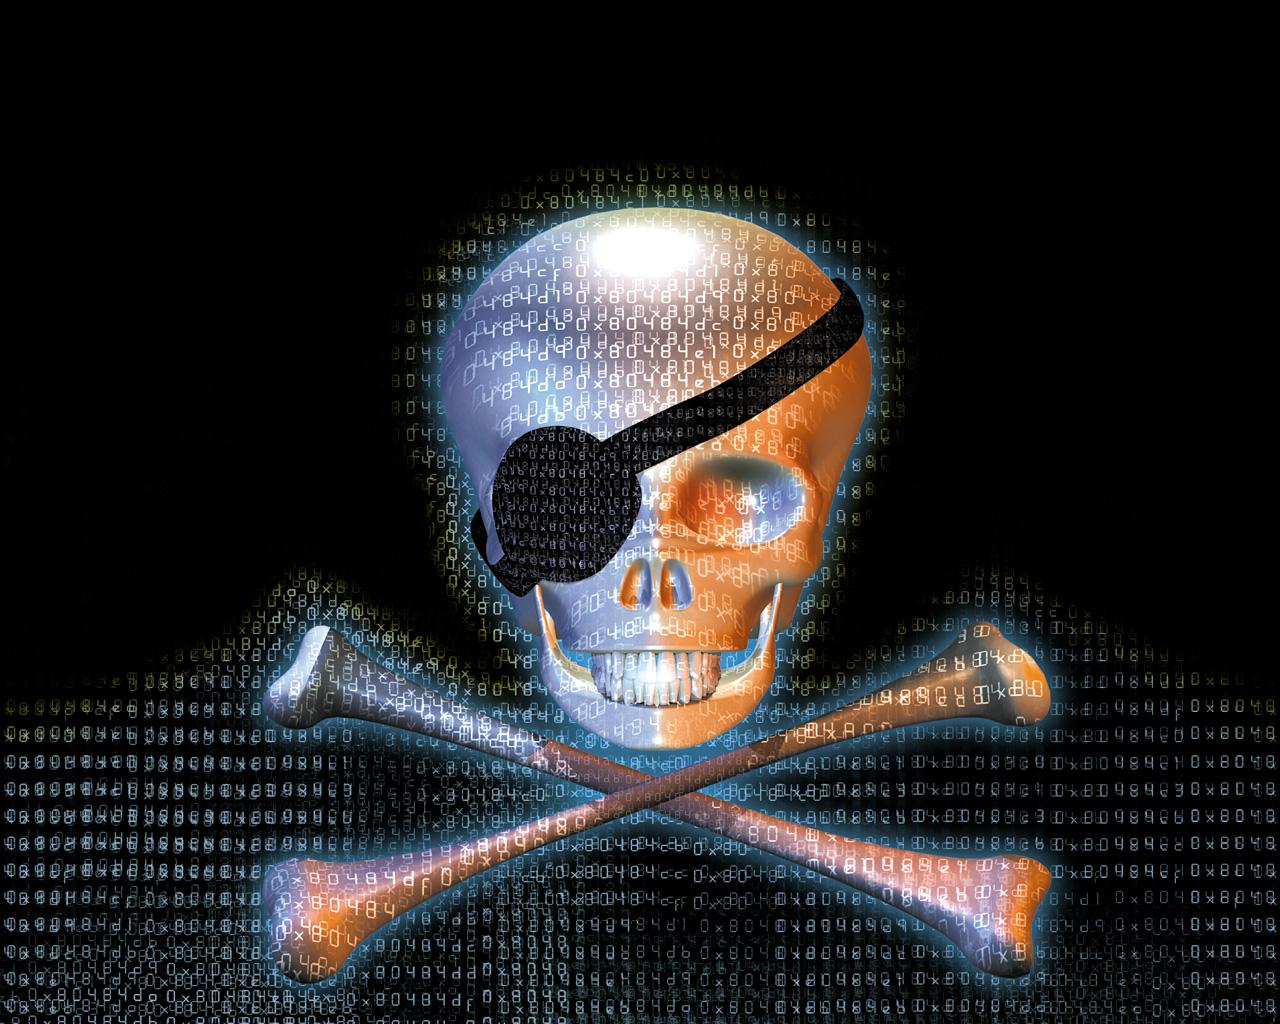 siti pirata